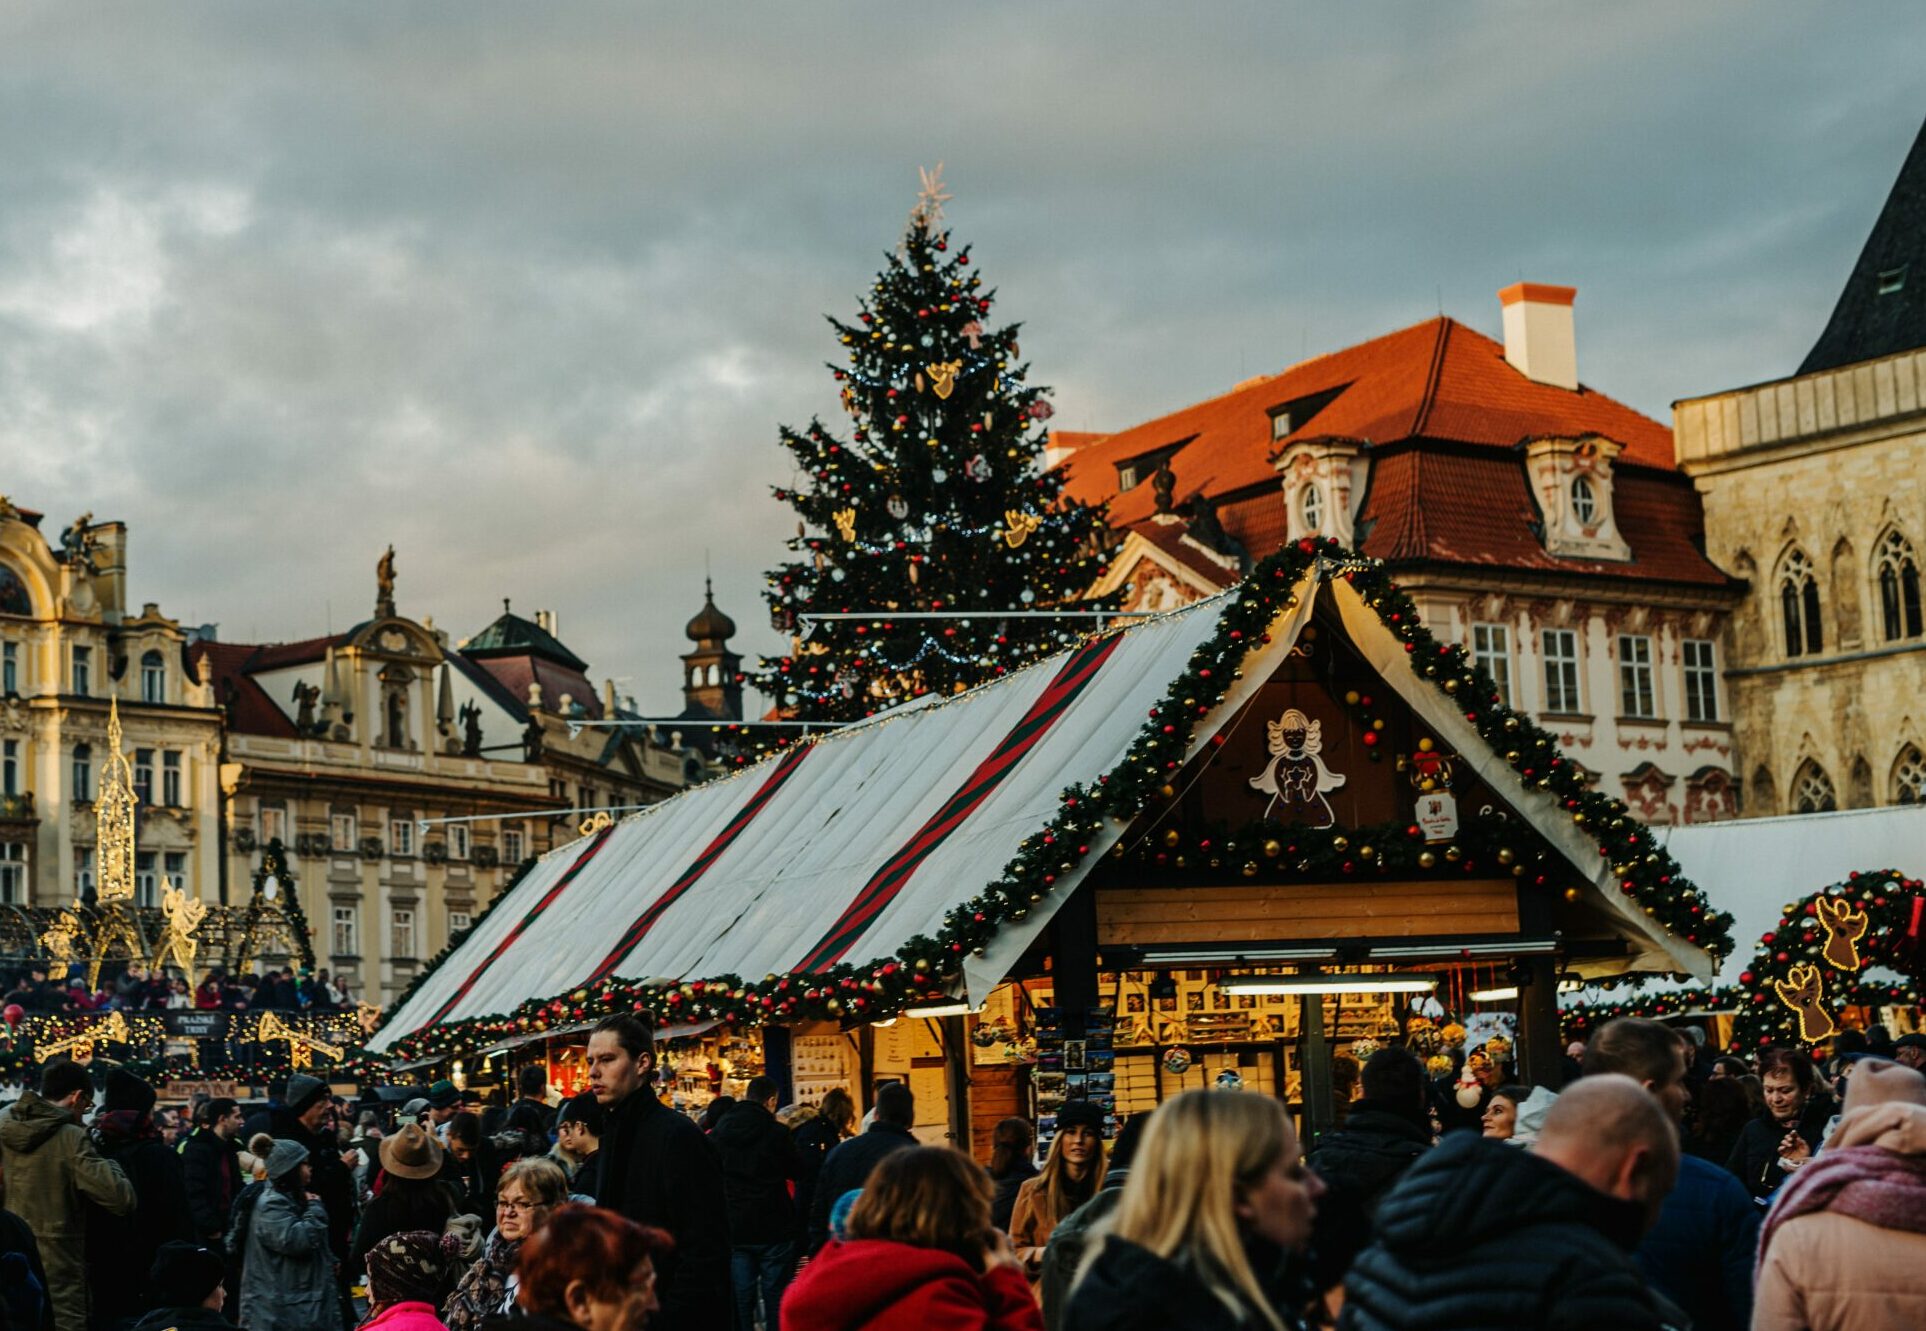 Kerstmarkten in Nederland 2022 - kerstmarkt utrecht 2022 -Kerstmarkt amsterdam - leukste kerstmarkten Nederland 2022 - Kerstmarkt Maastricht - Kerstmarkt Breda 2022 - Kerstmarkt Den Haag